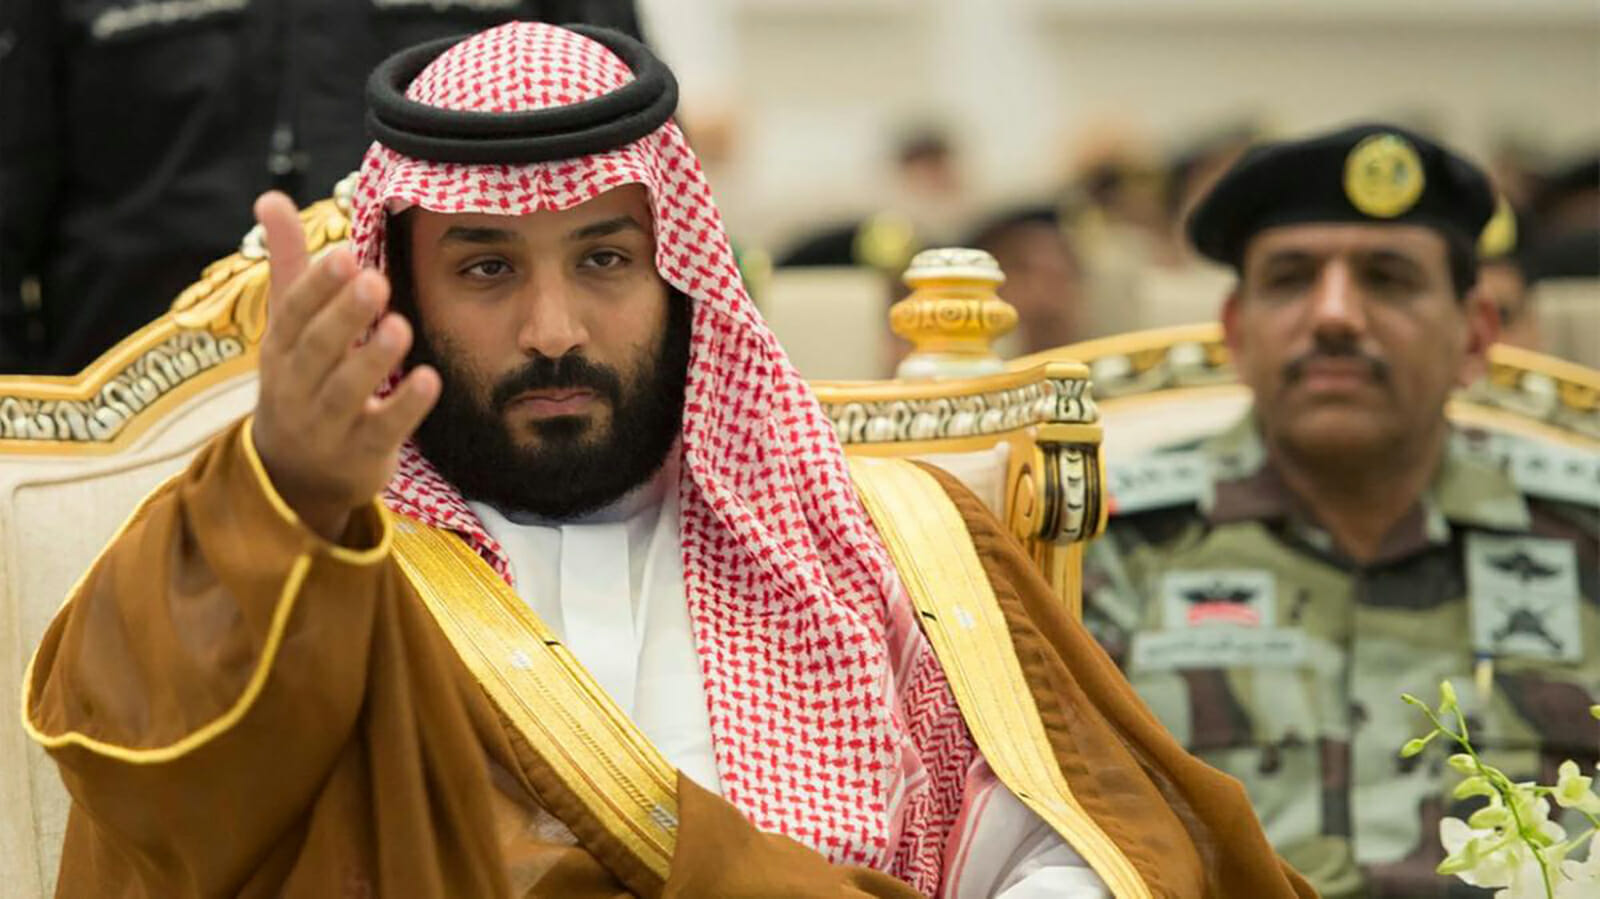 ضابط سعودي ينتقد انتهاكات محمد بن سلمان في السعودية watanserb.com